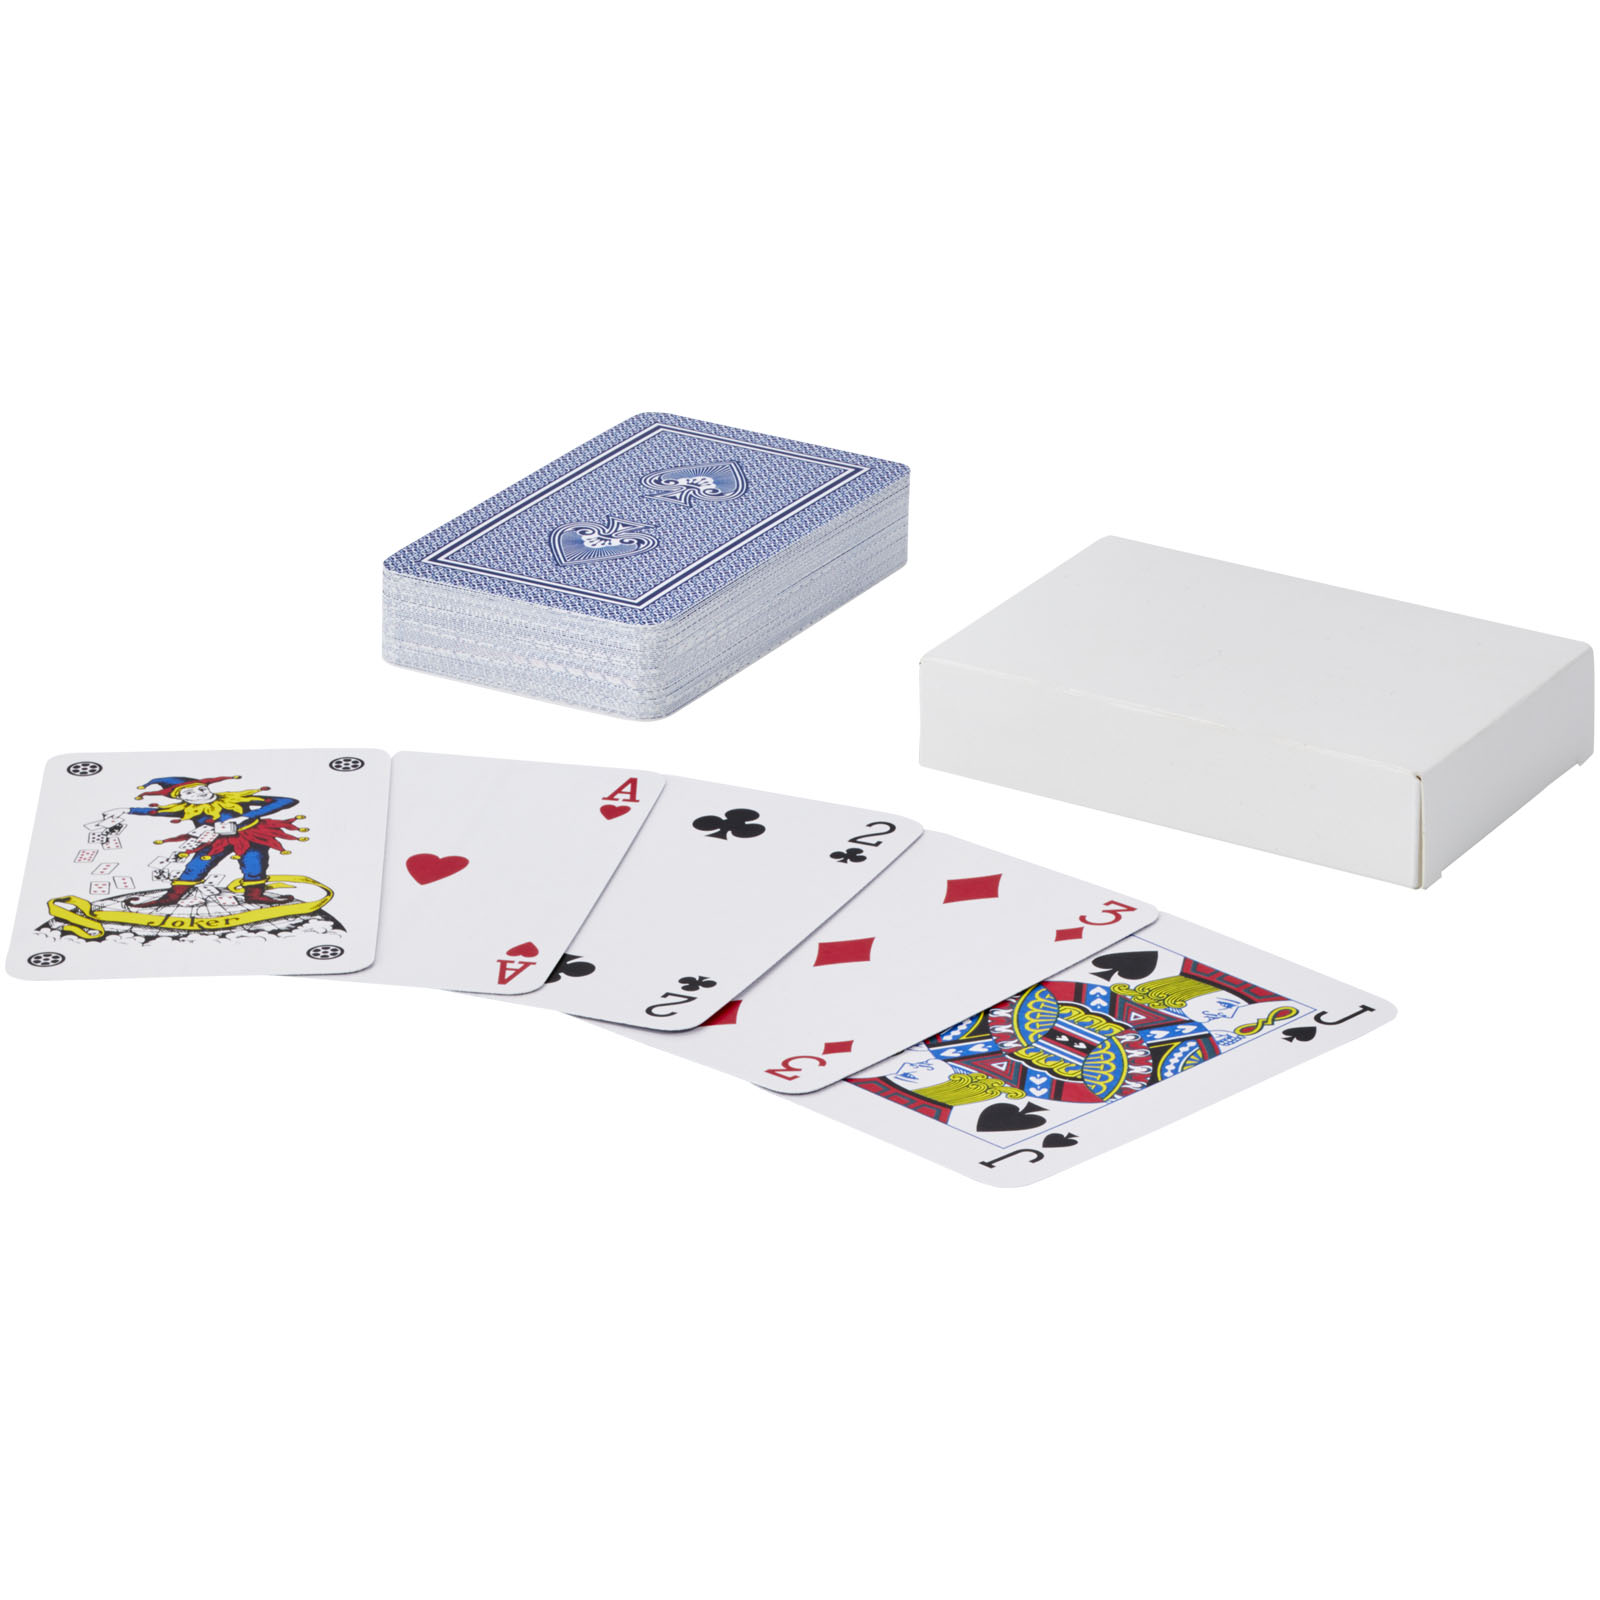 Jeux d'intérieur publicitaires - Ensemble de cartes à jouer Ace